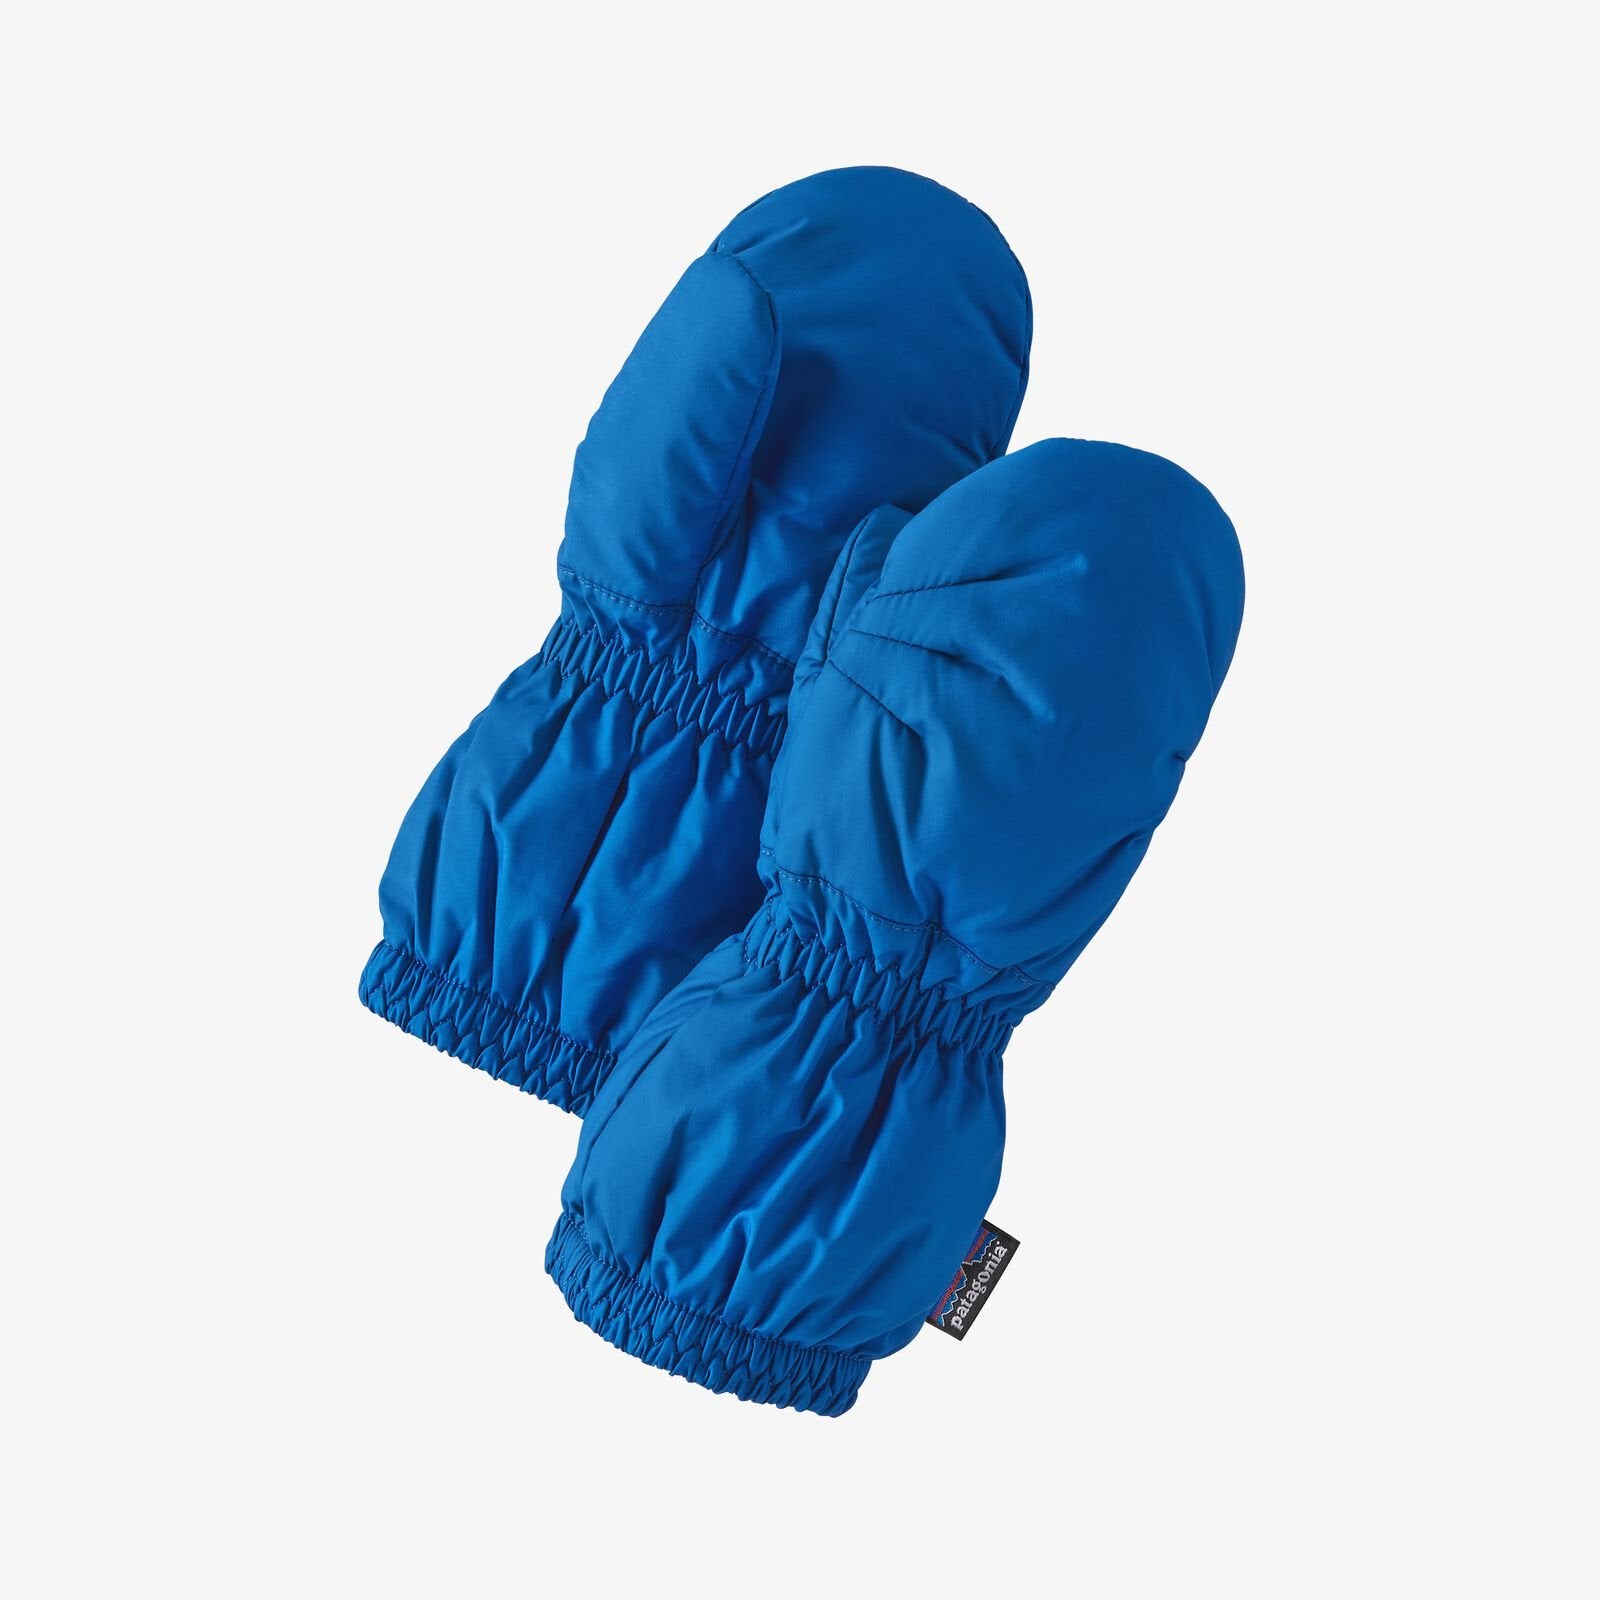 Patagonia unisex gants baby puff bleu bayou blue 6-12m